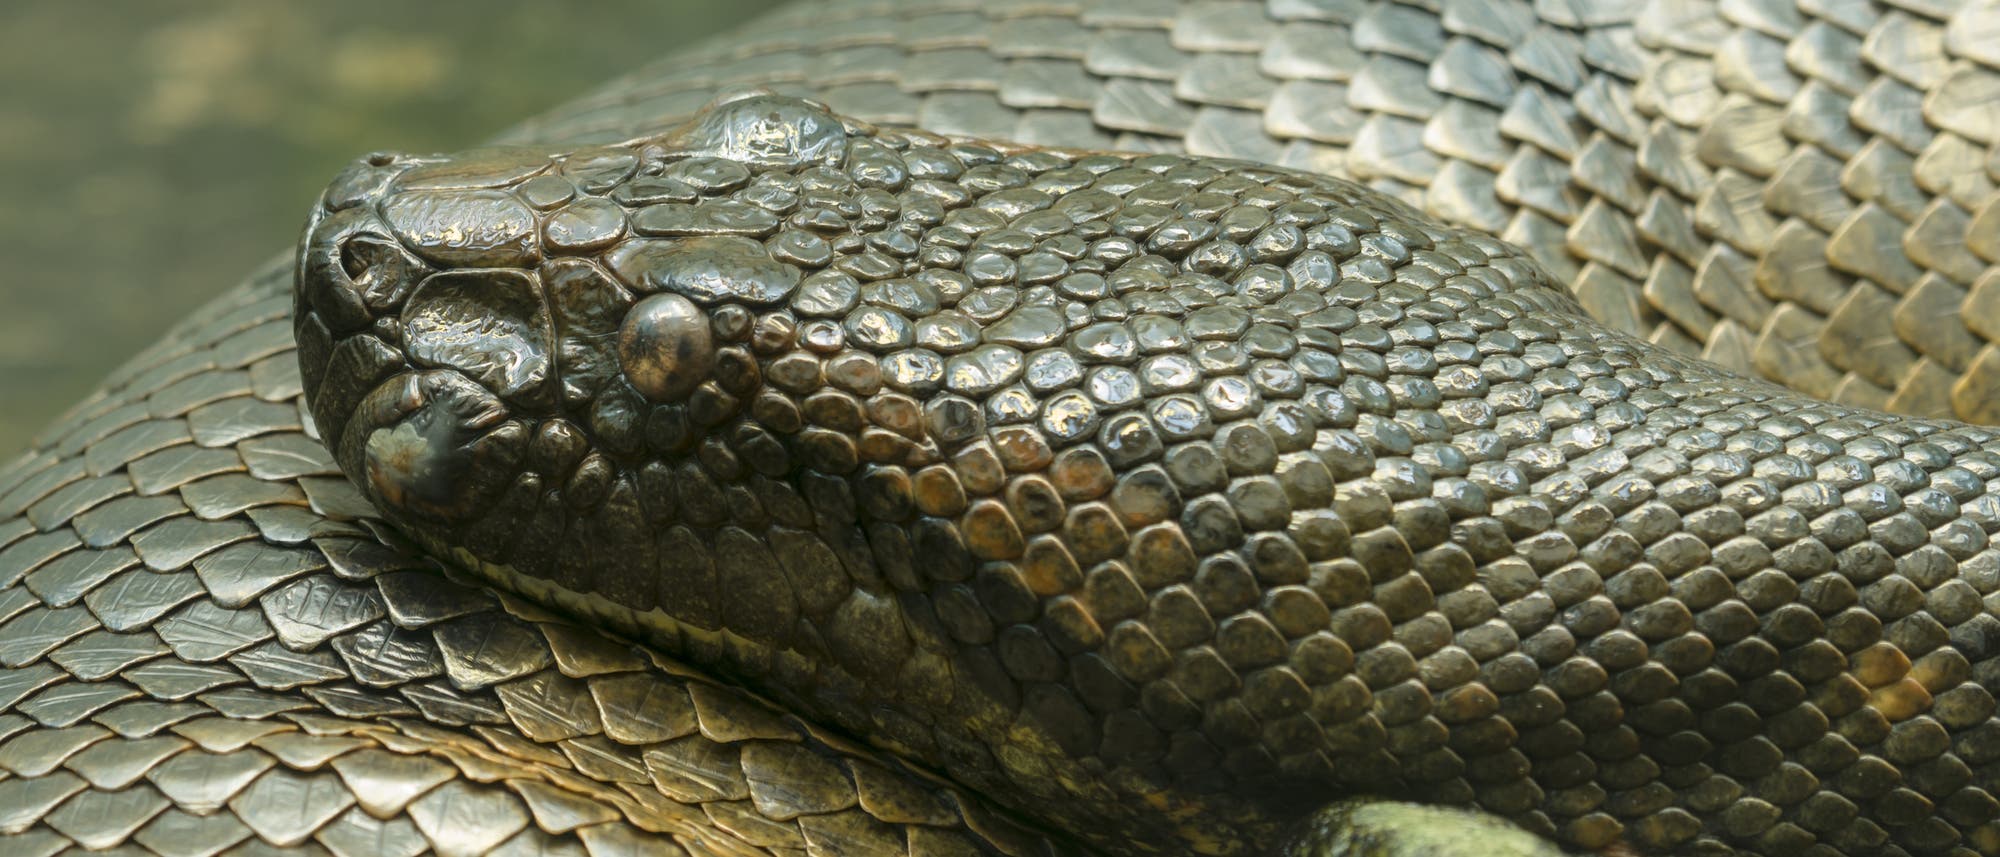 Die südamerikanischen Anakondas gehören zu den größten Riesenschlangen der Erde: Ausgewachsene Exemplare können sieben Meter und länger werden. Allerdings bedrohen Abholzung, illegaler Tierfank und Wilderei die Art.